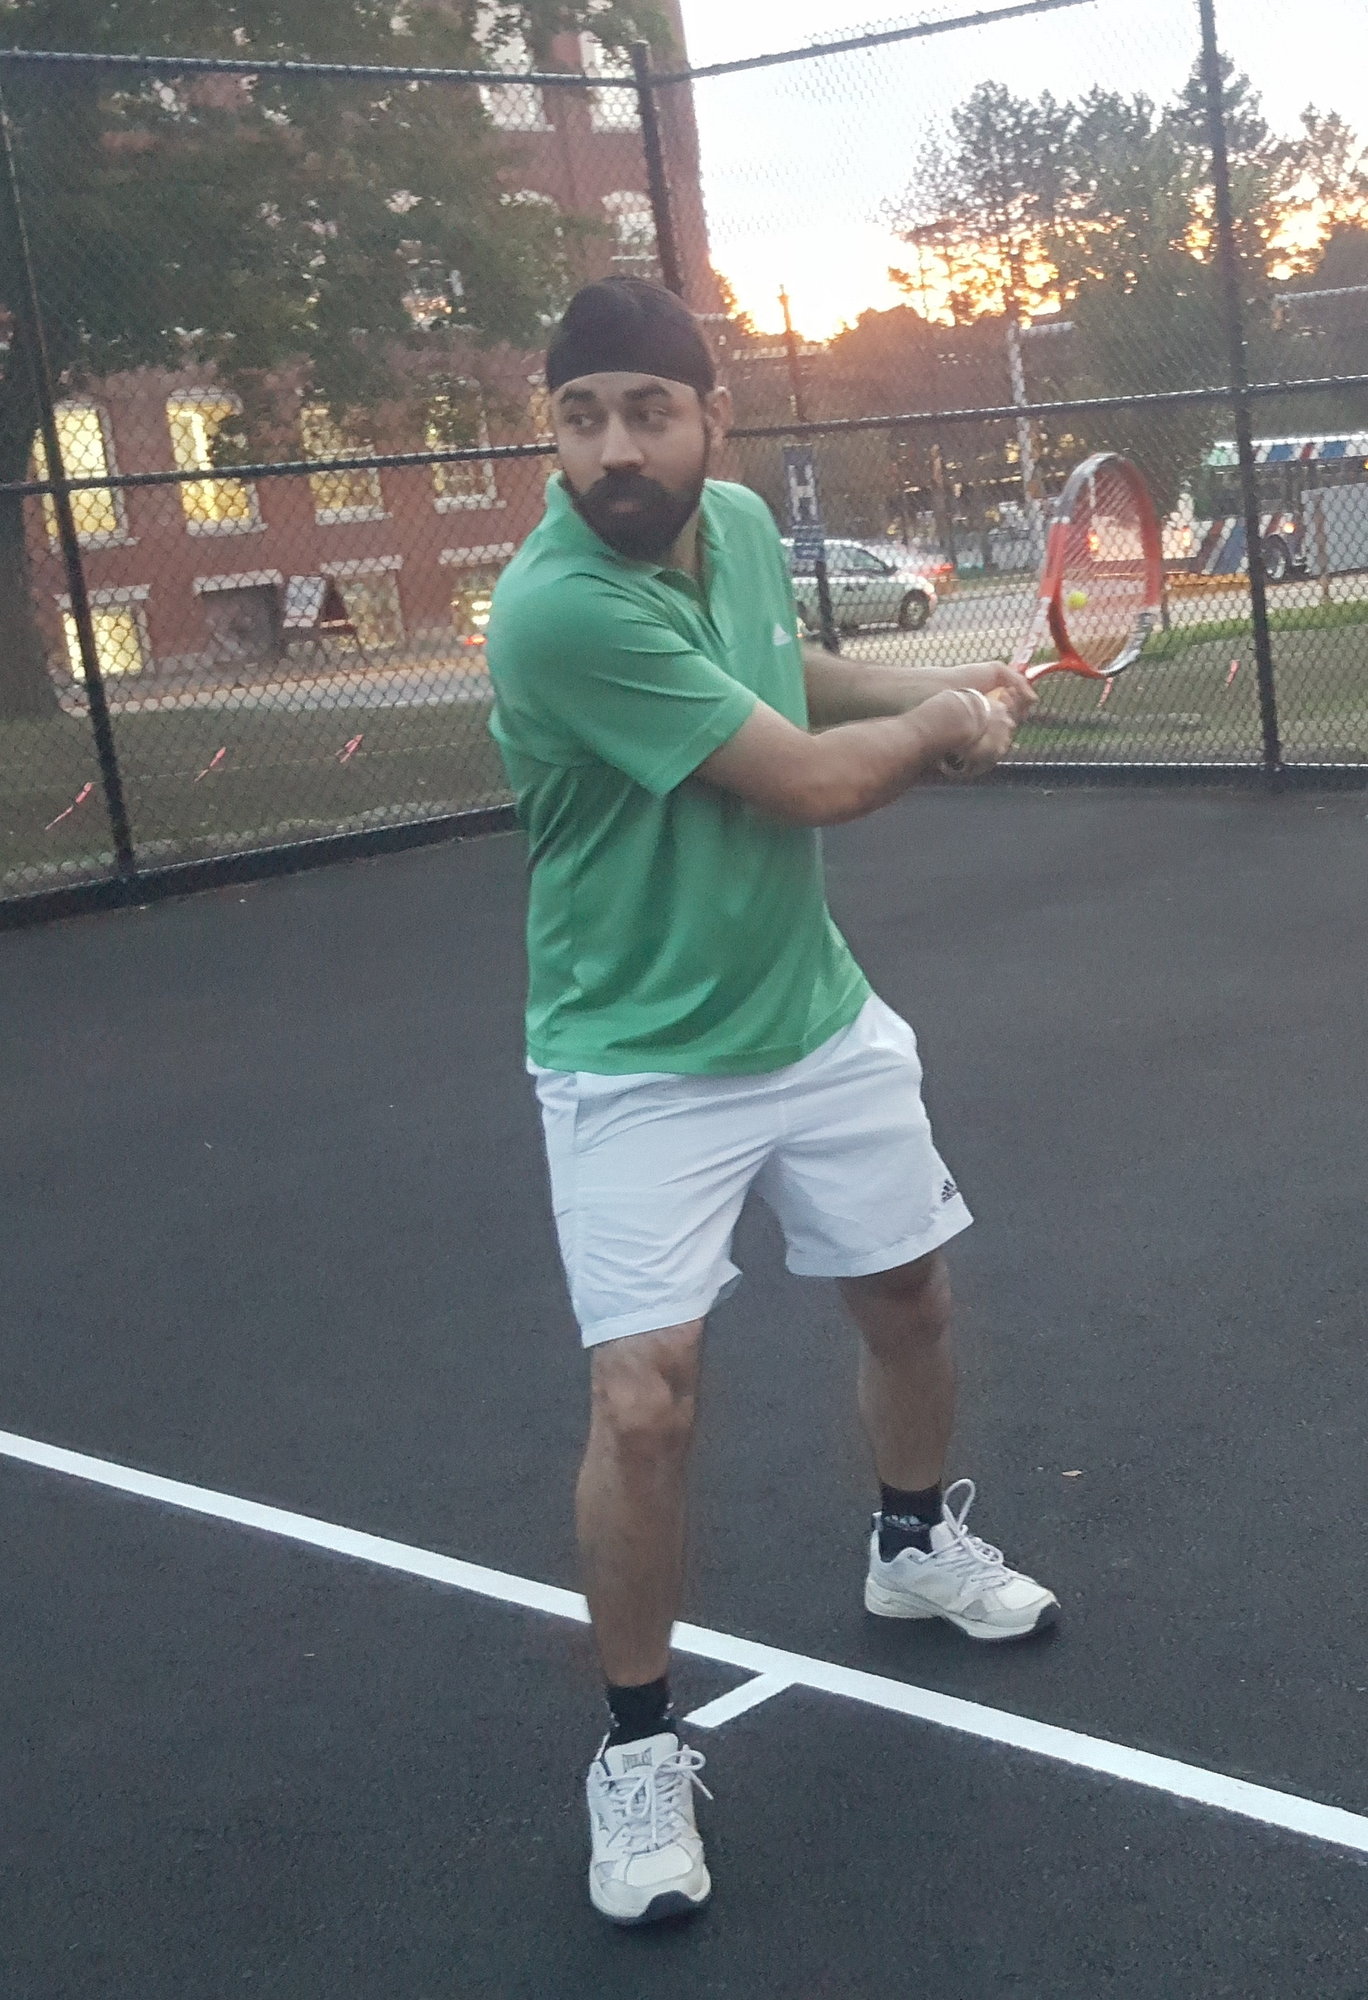 Baldeep G. teaches tennis lessons in Lowell, MA